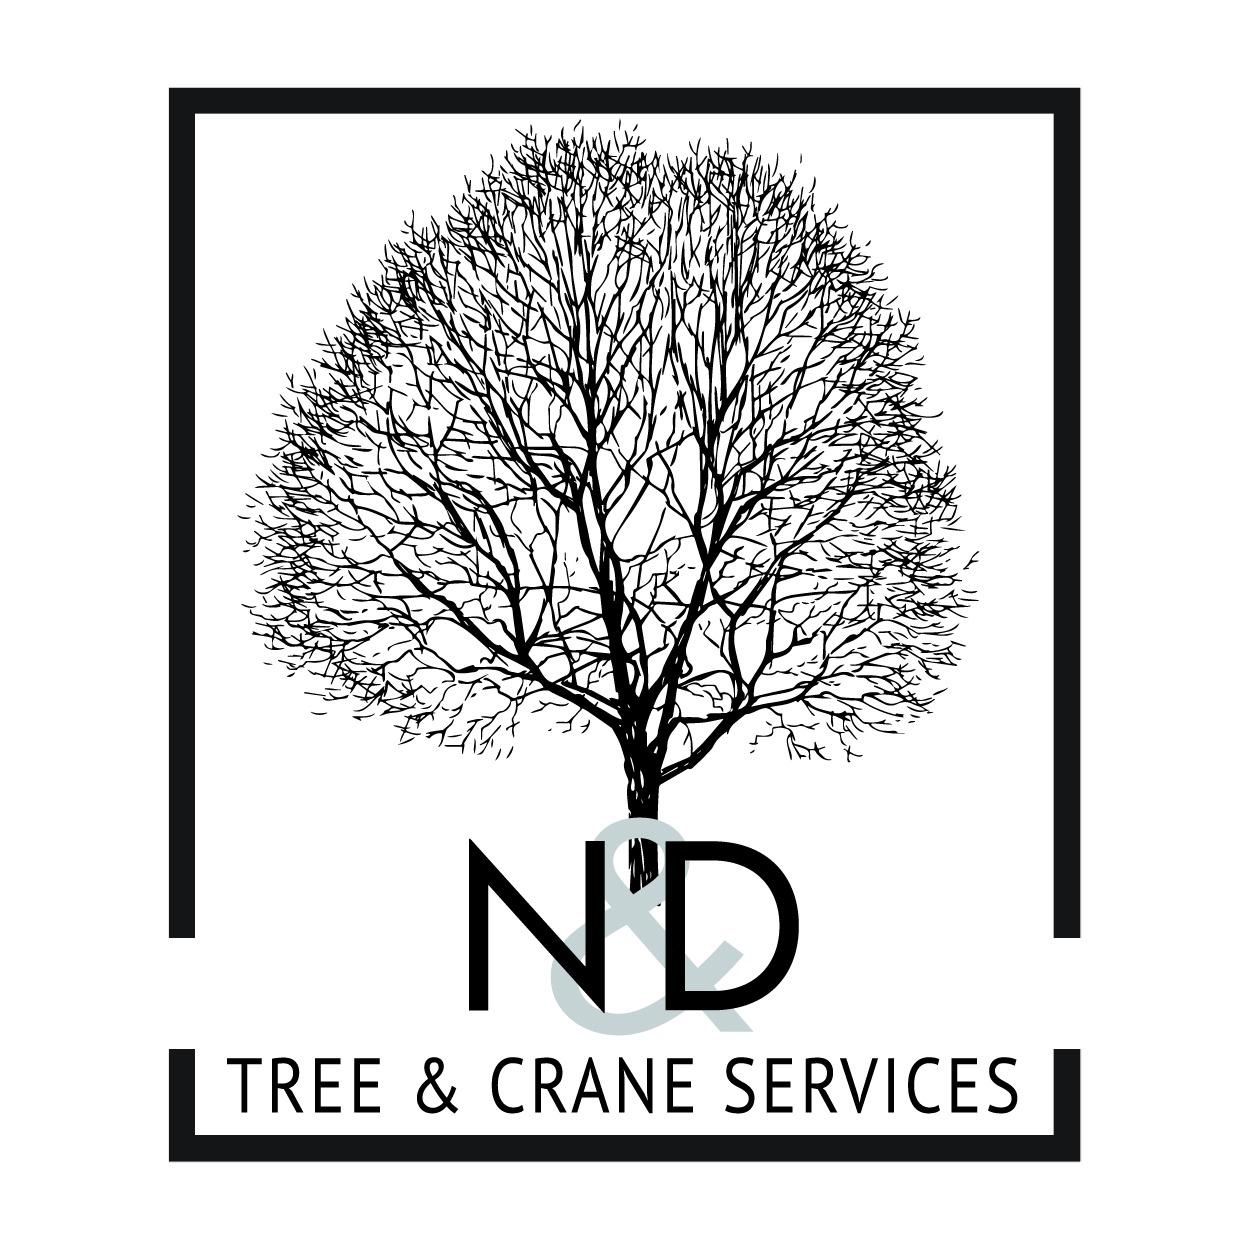 N&D Tree & Crane Services - Parker, CO - (719)651-4019 | ShowMeLocal.com